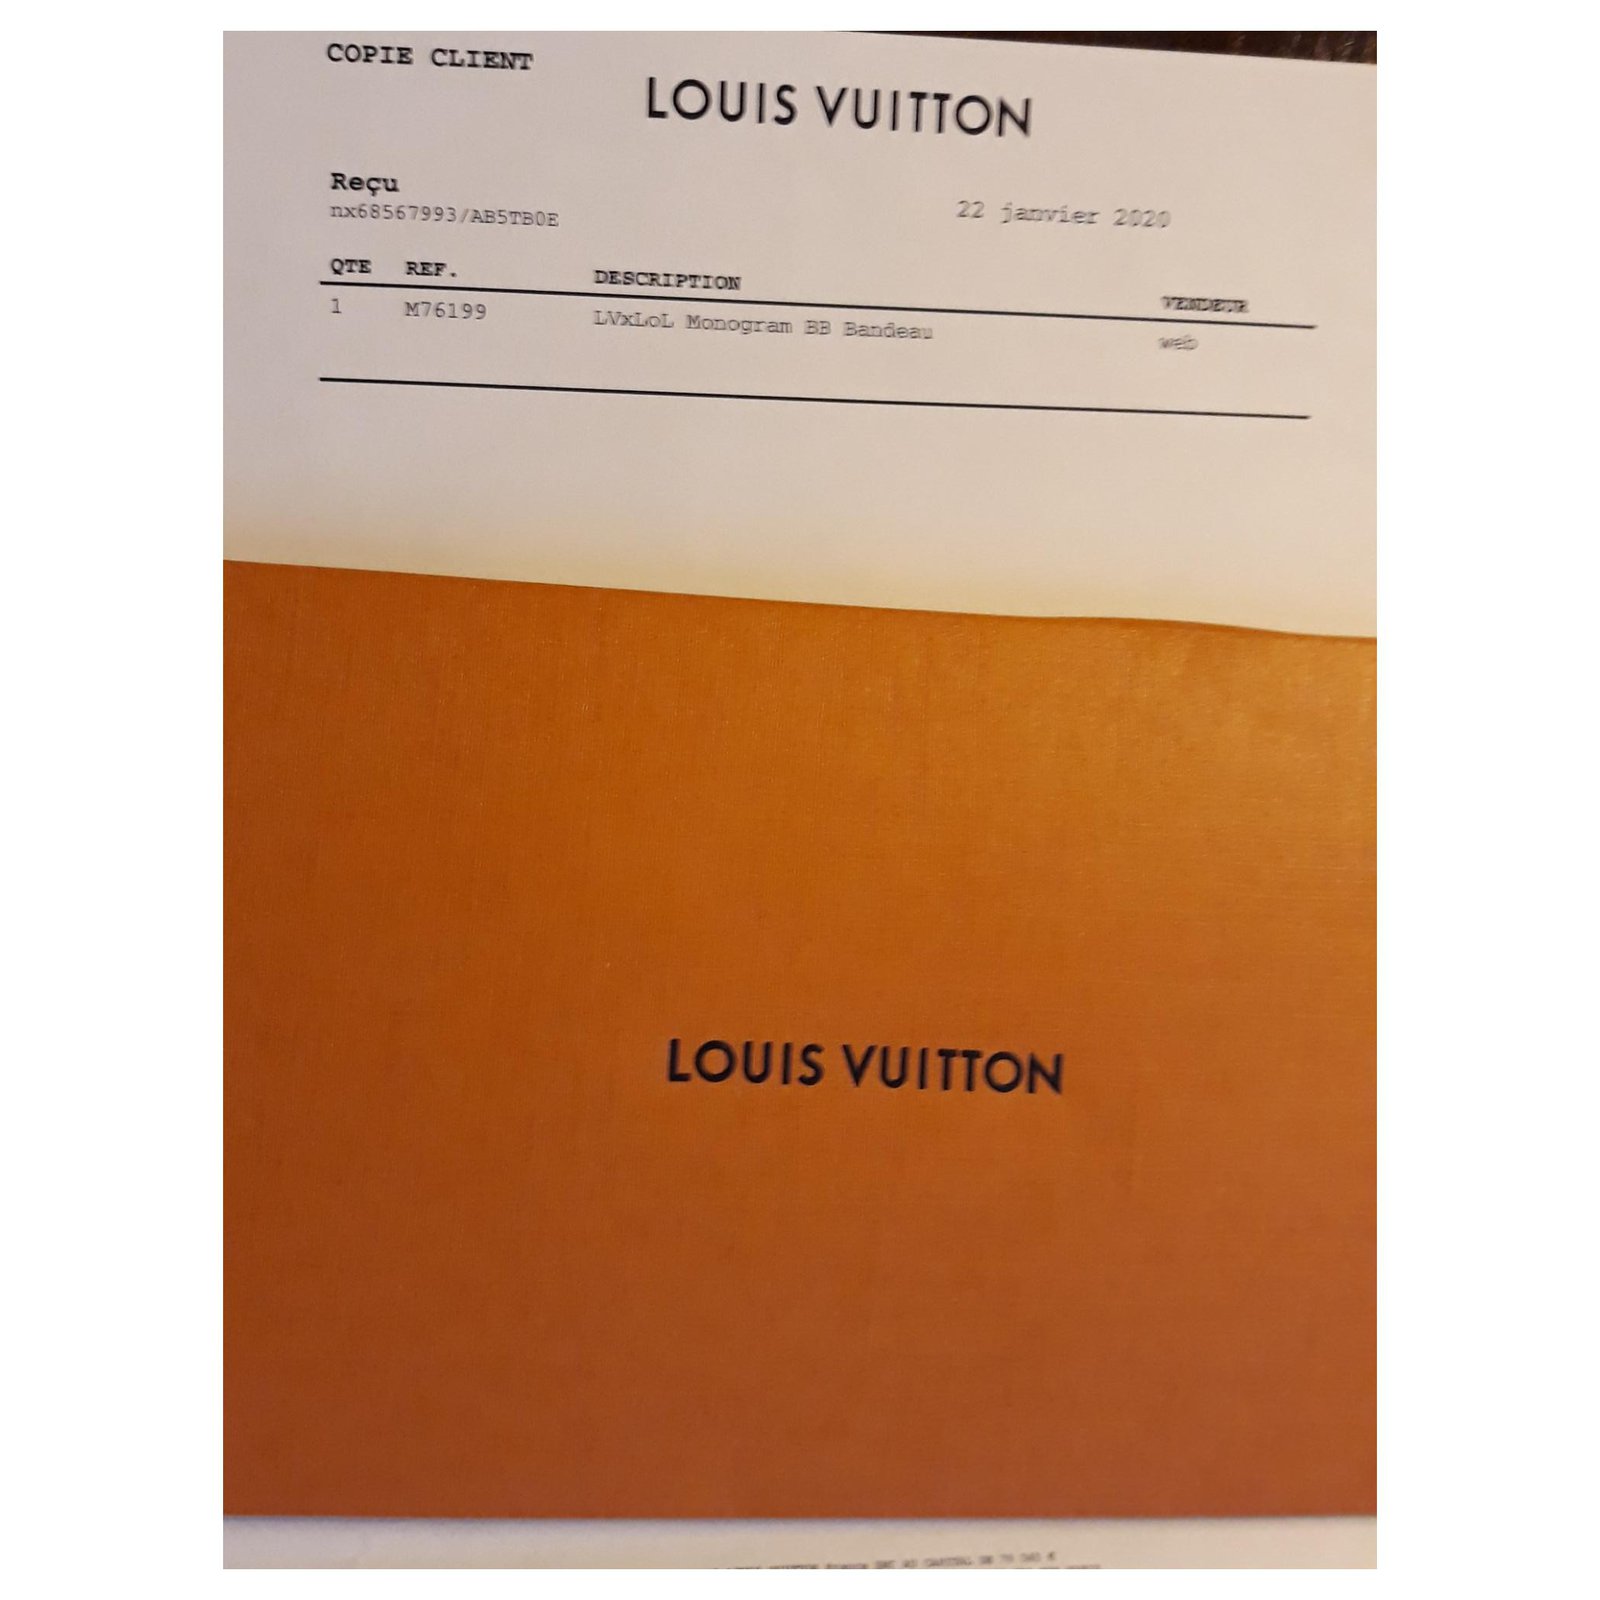 Products By Louis Vuitton: Lvxlol Monogram Bb Bandeau